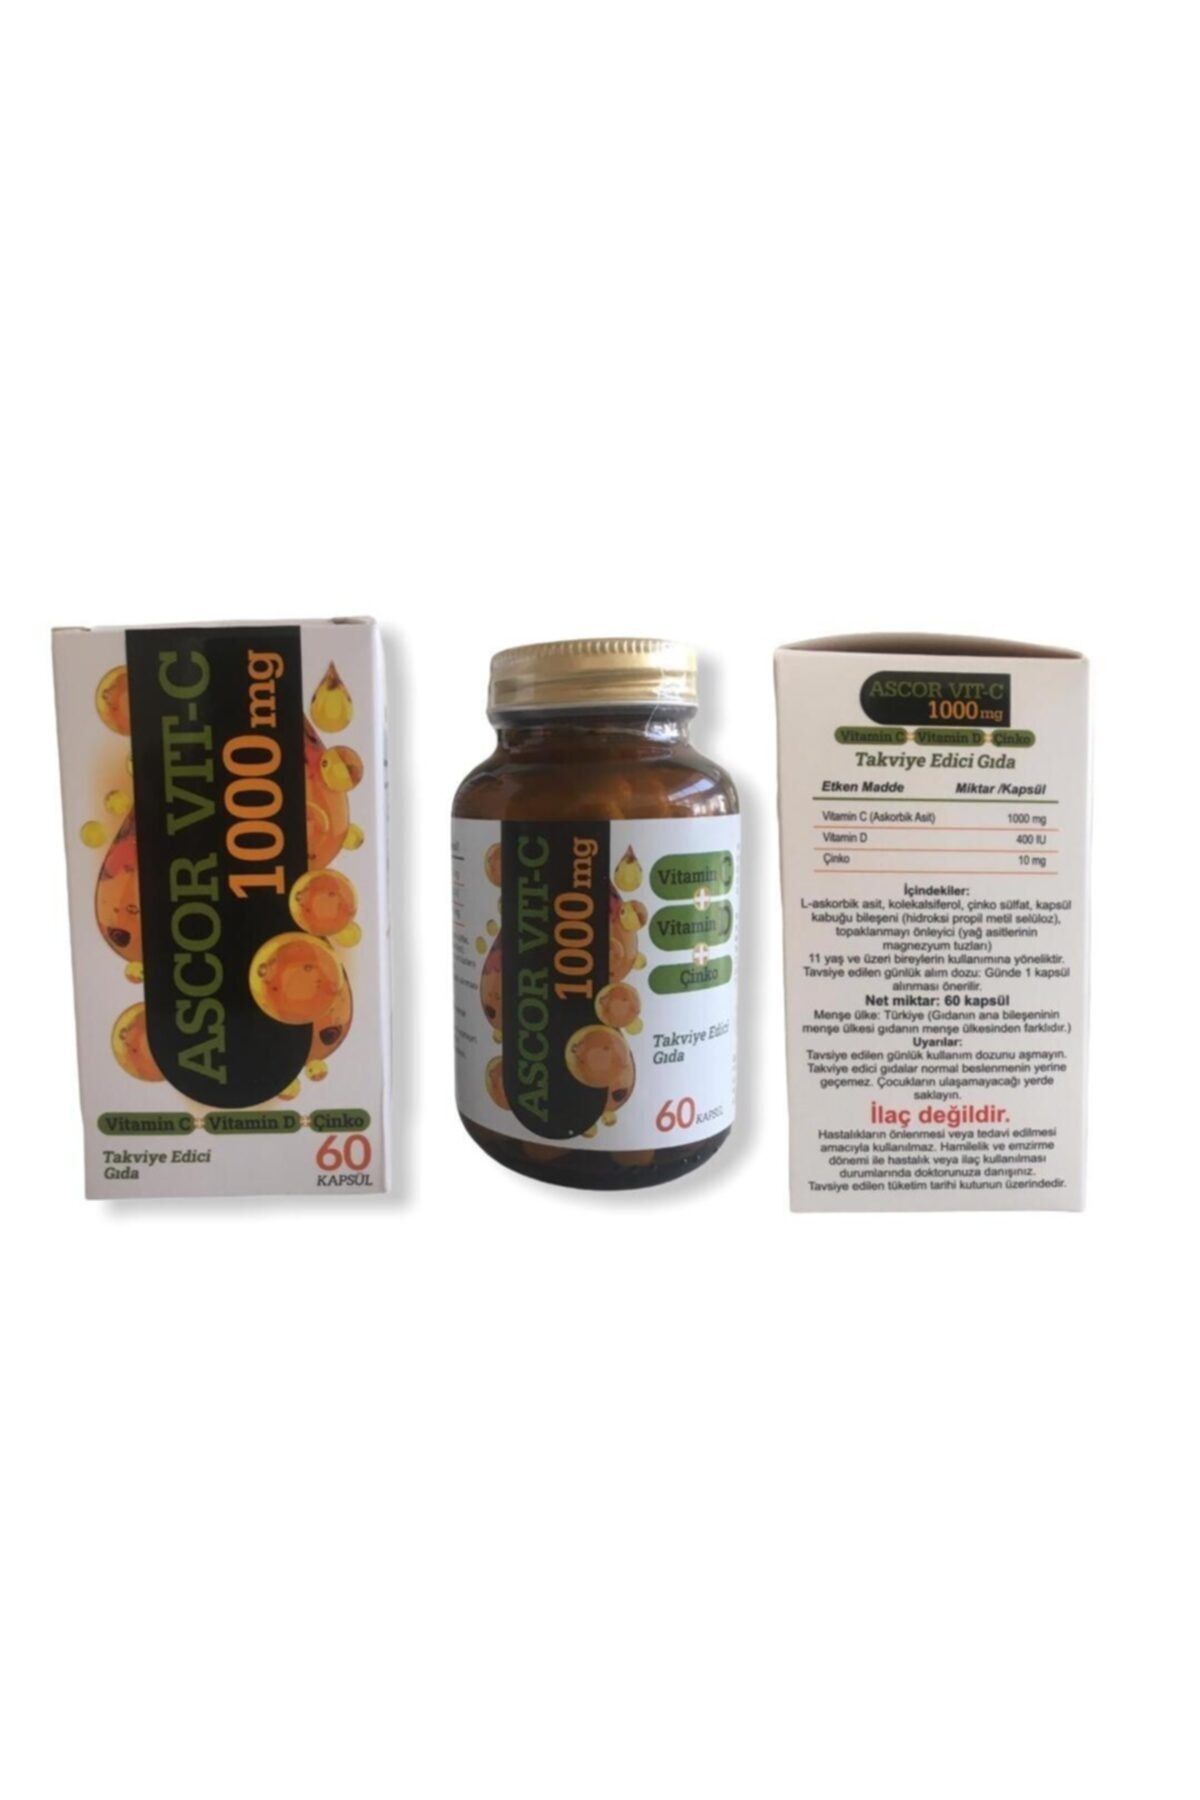 Biohand Ascor Vıt C 1000 mg 60 Kapsul Takviye Edici Gıda